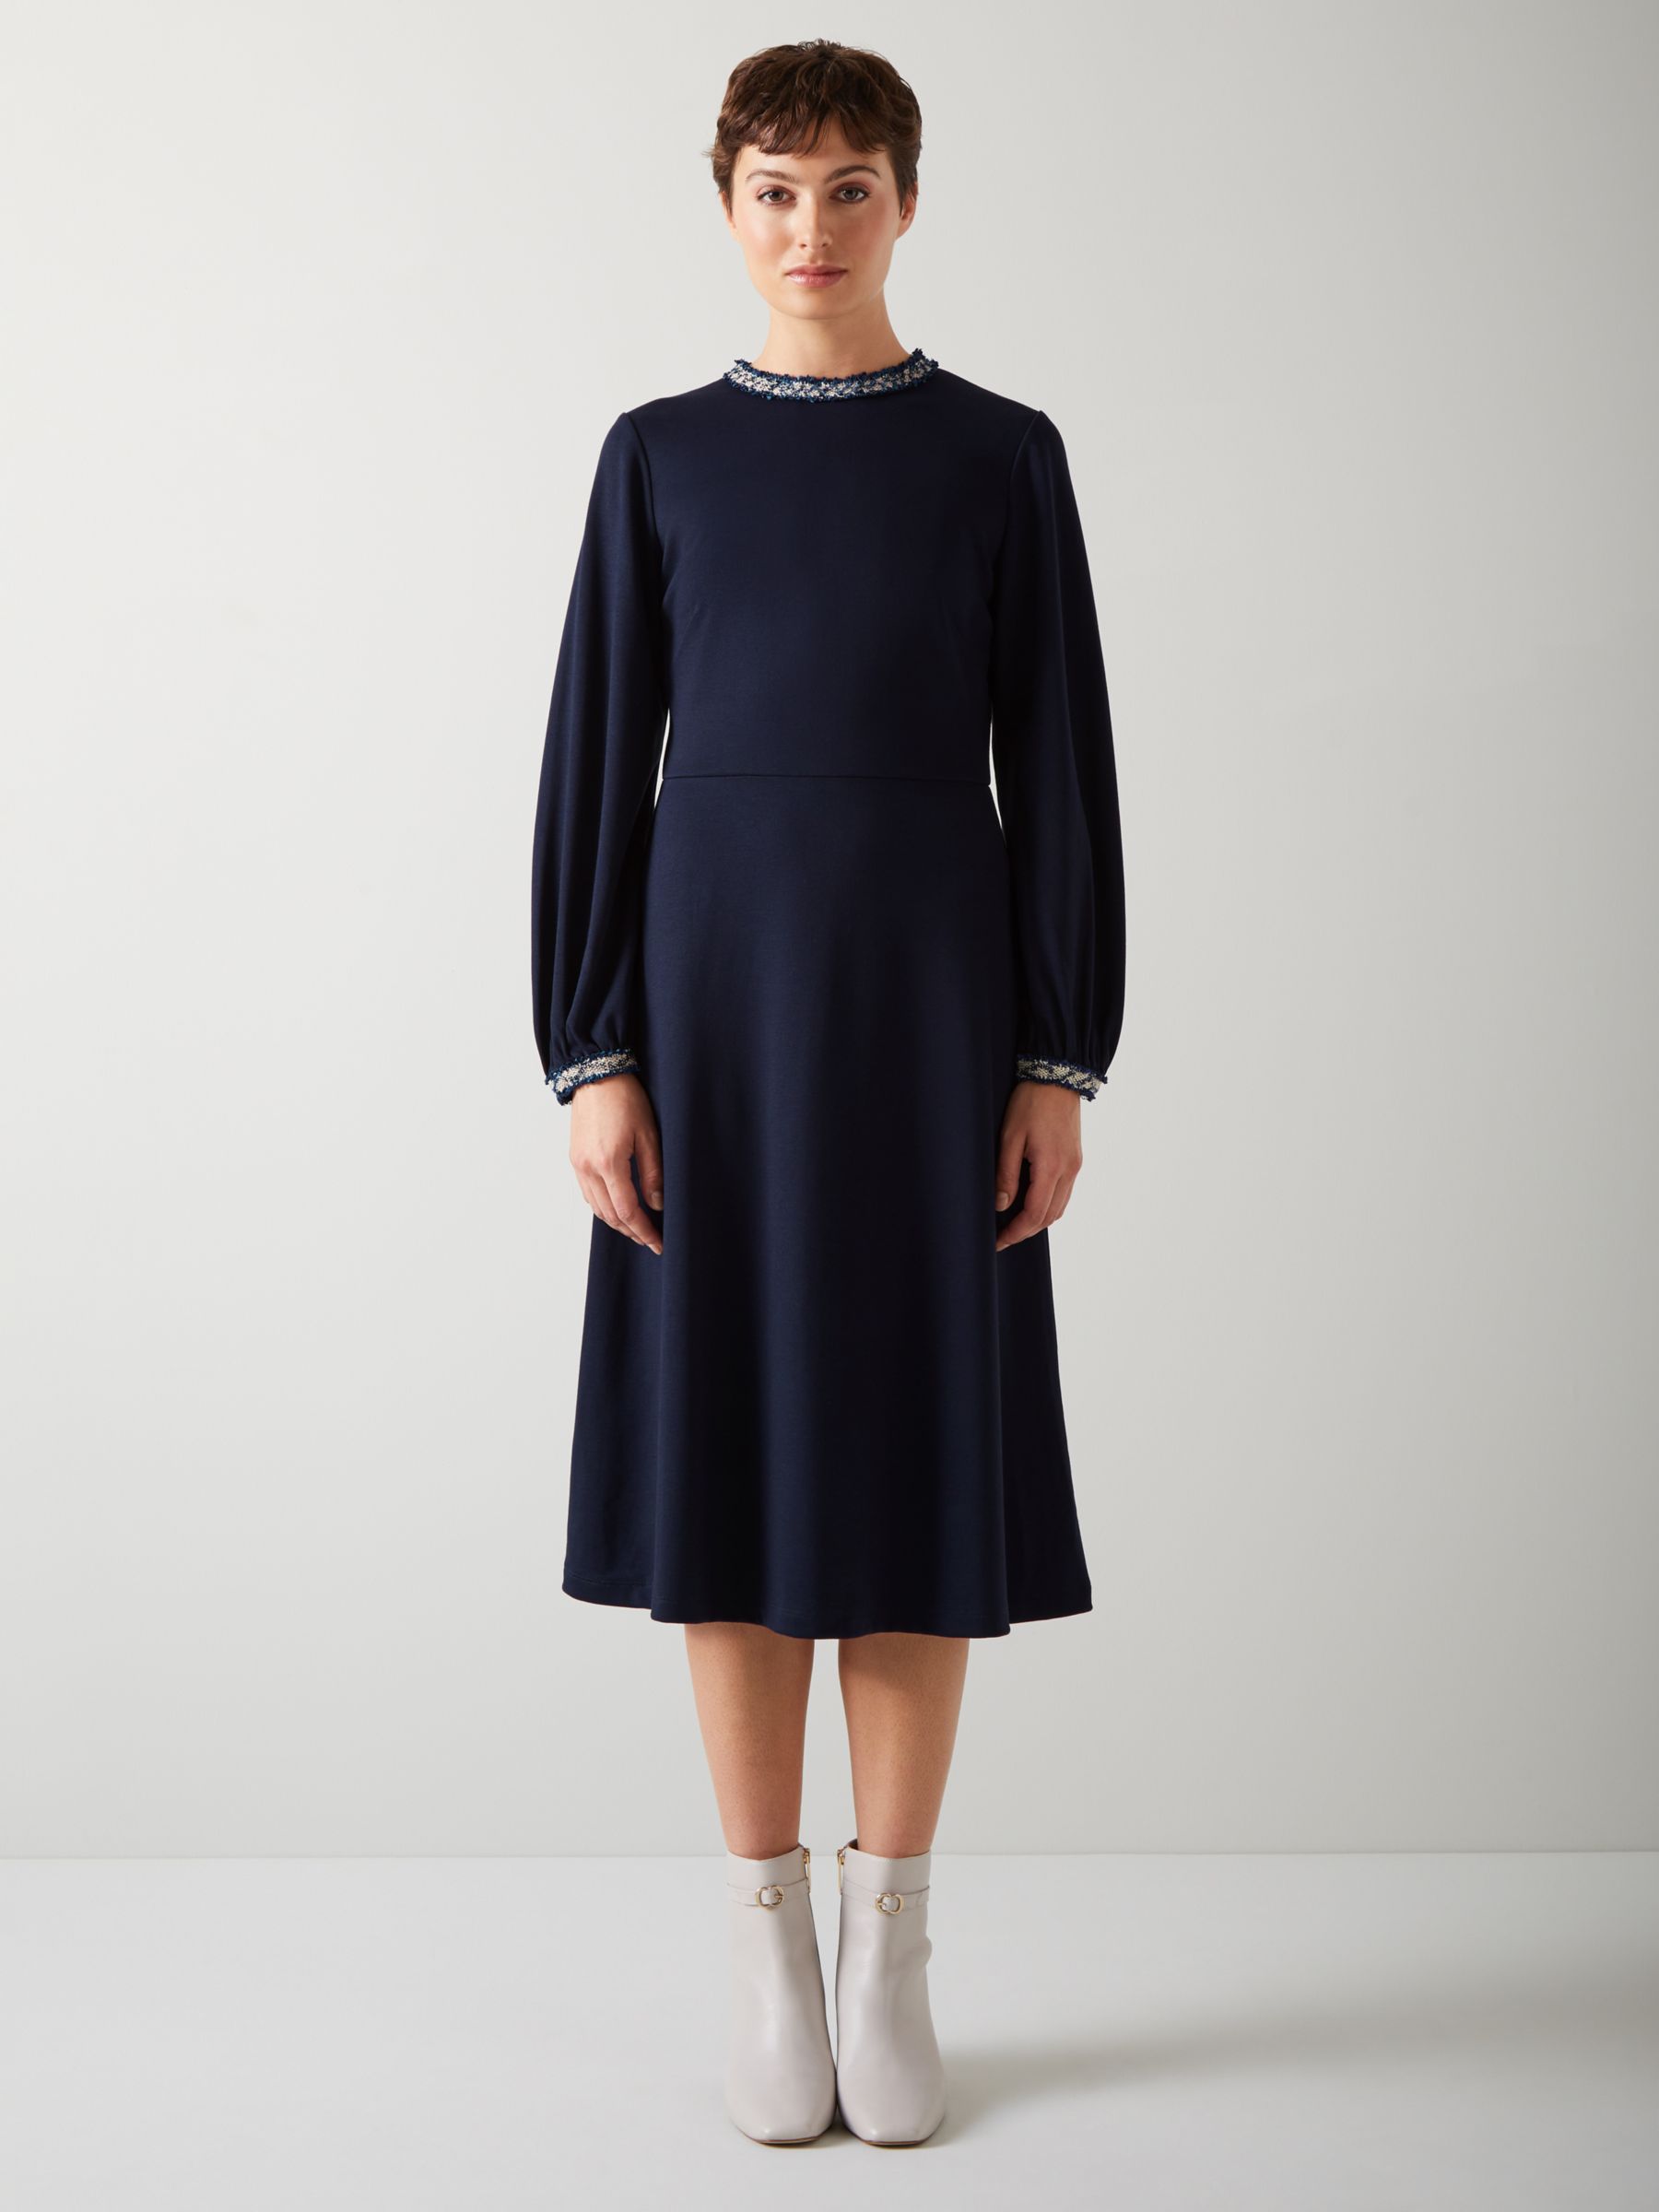 L.K.Bennett Yvonne Viscose Elastane Dress, Blue at John Lewis & Partners